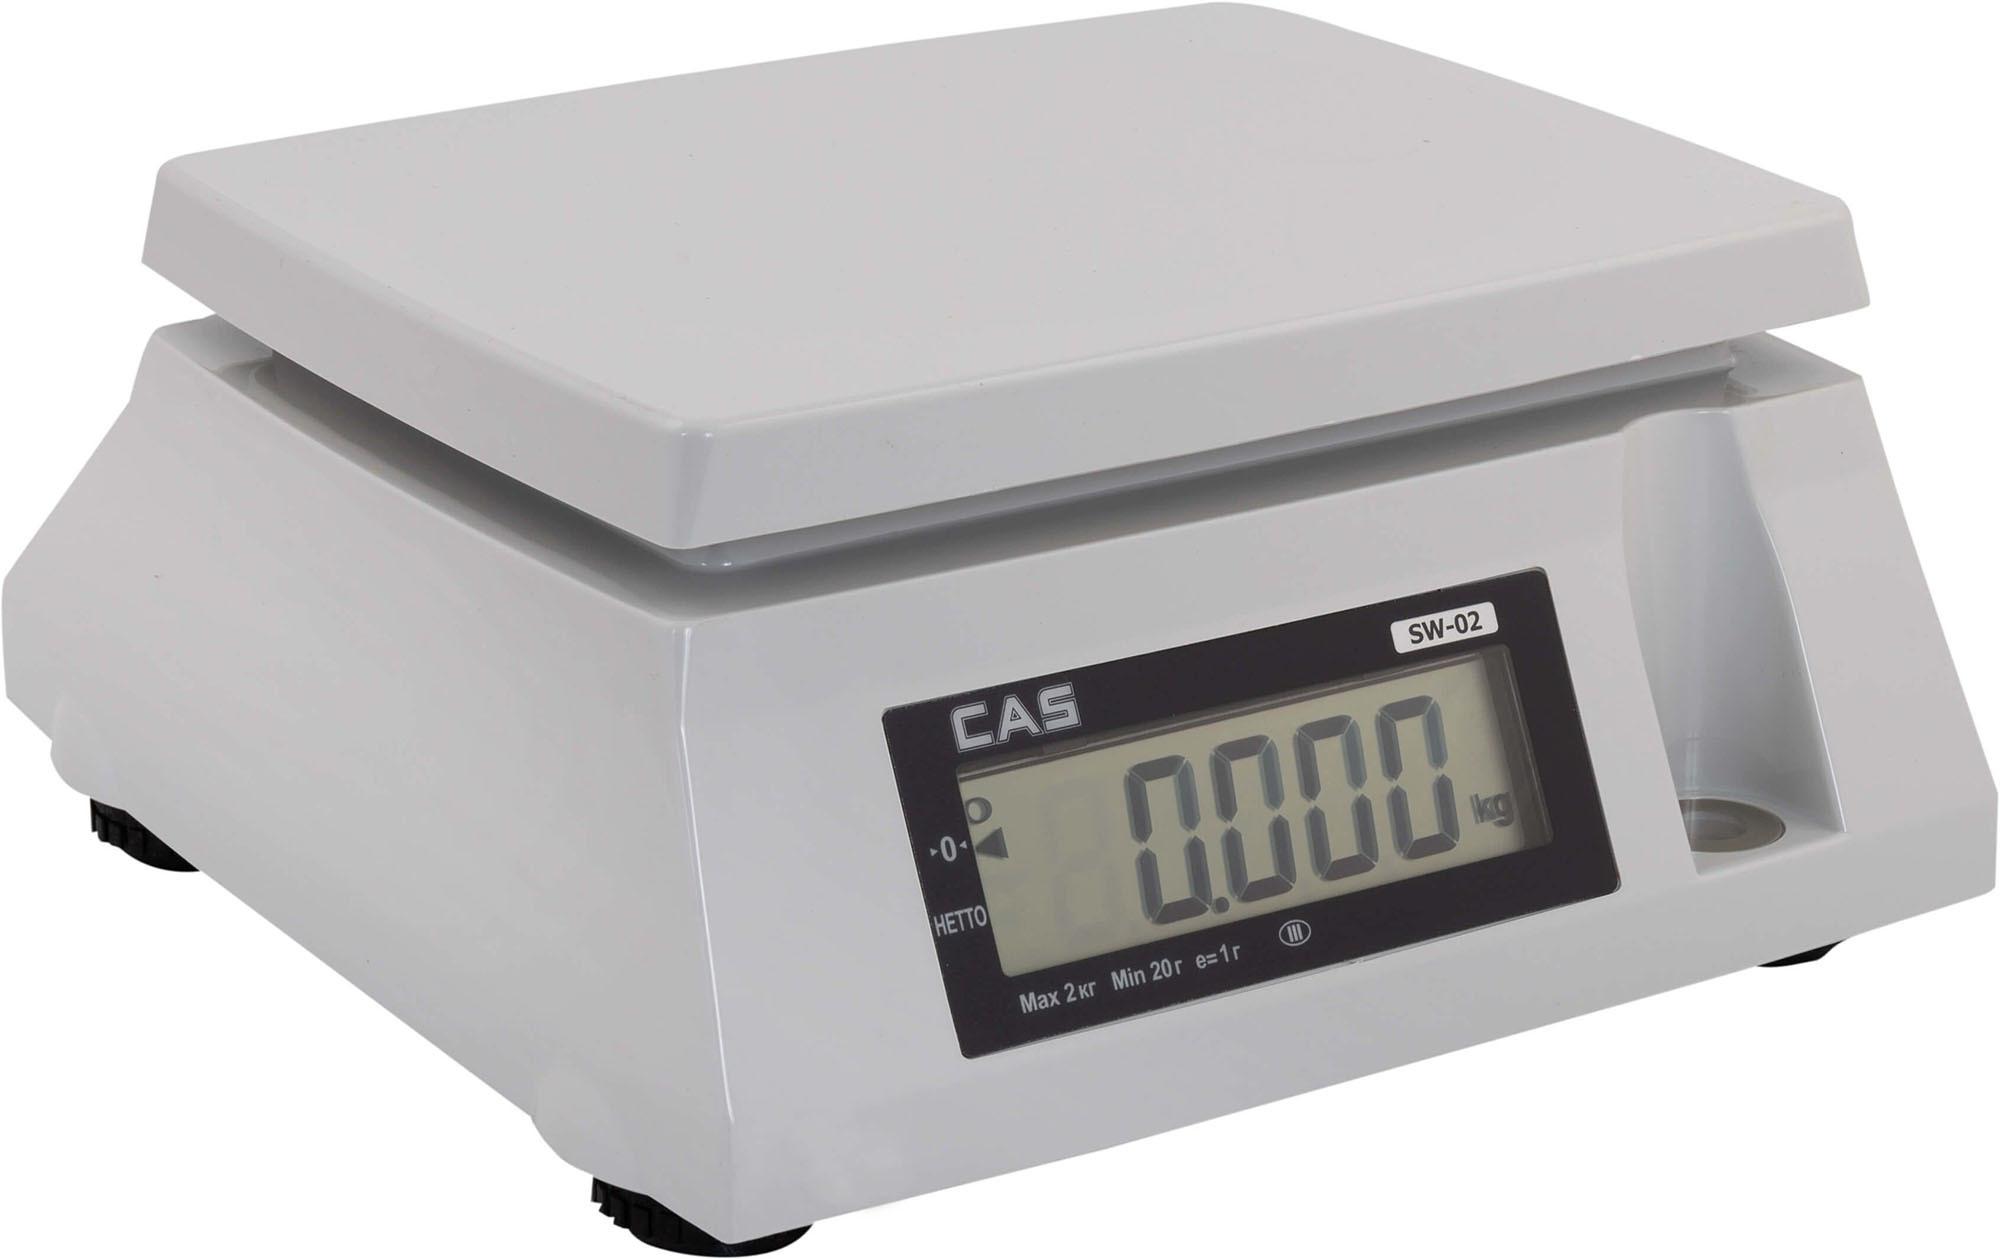 Наcтольные  весы СAS модель SW (2-20 кг)